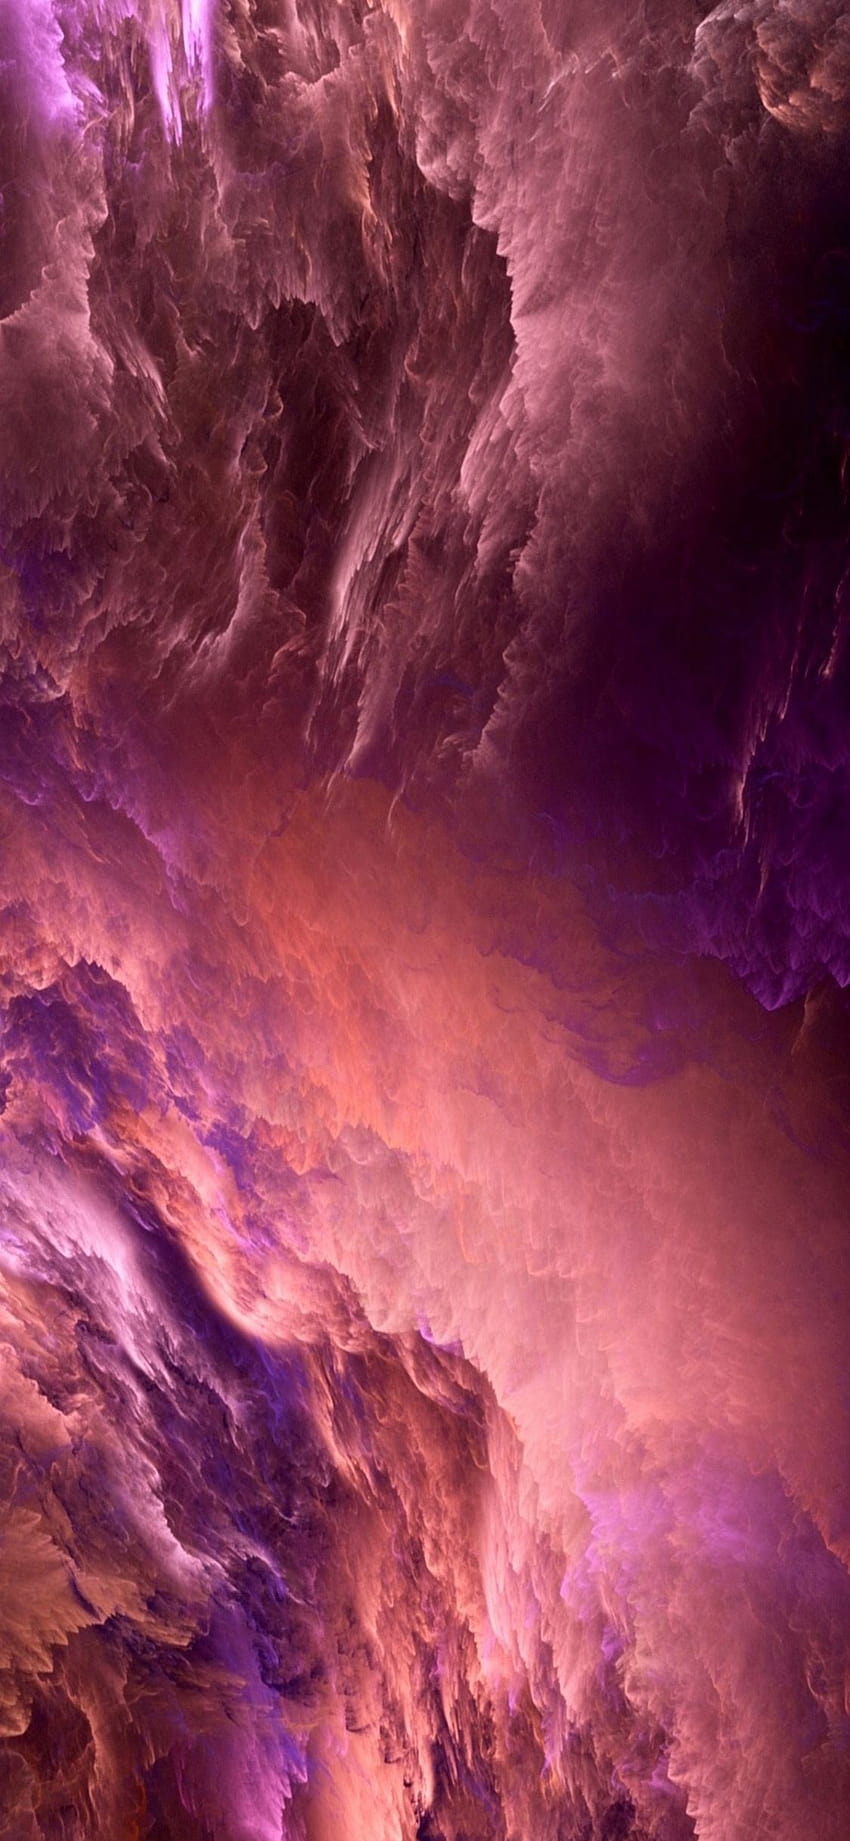 Cloud iPhone X Resolusi Tinggi 1125 x 2436 Piksel, iphone awan ungu merah muda wallpaper ponsel HD